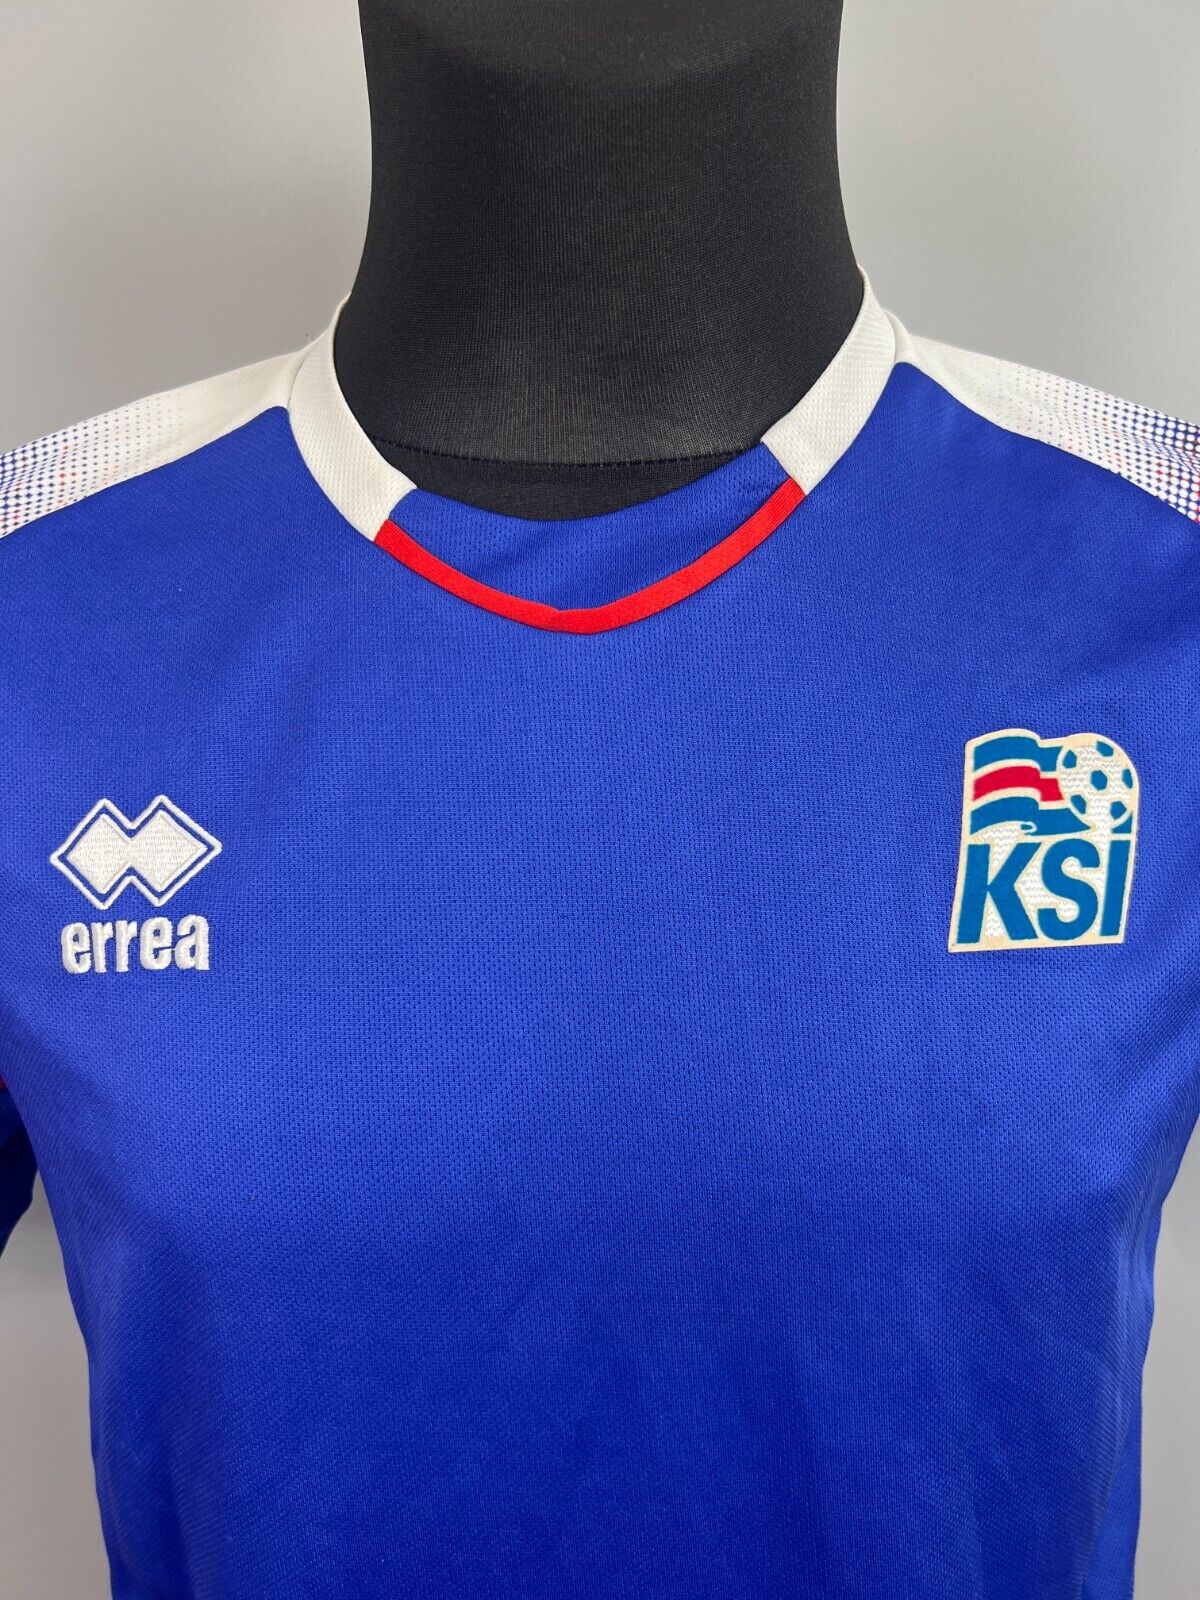 Iceland men's national team retro memorabilia